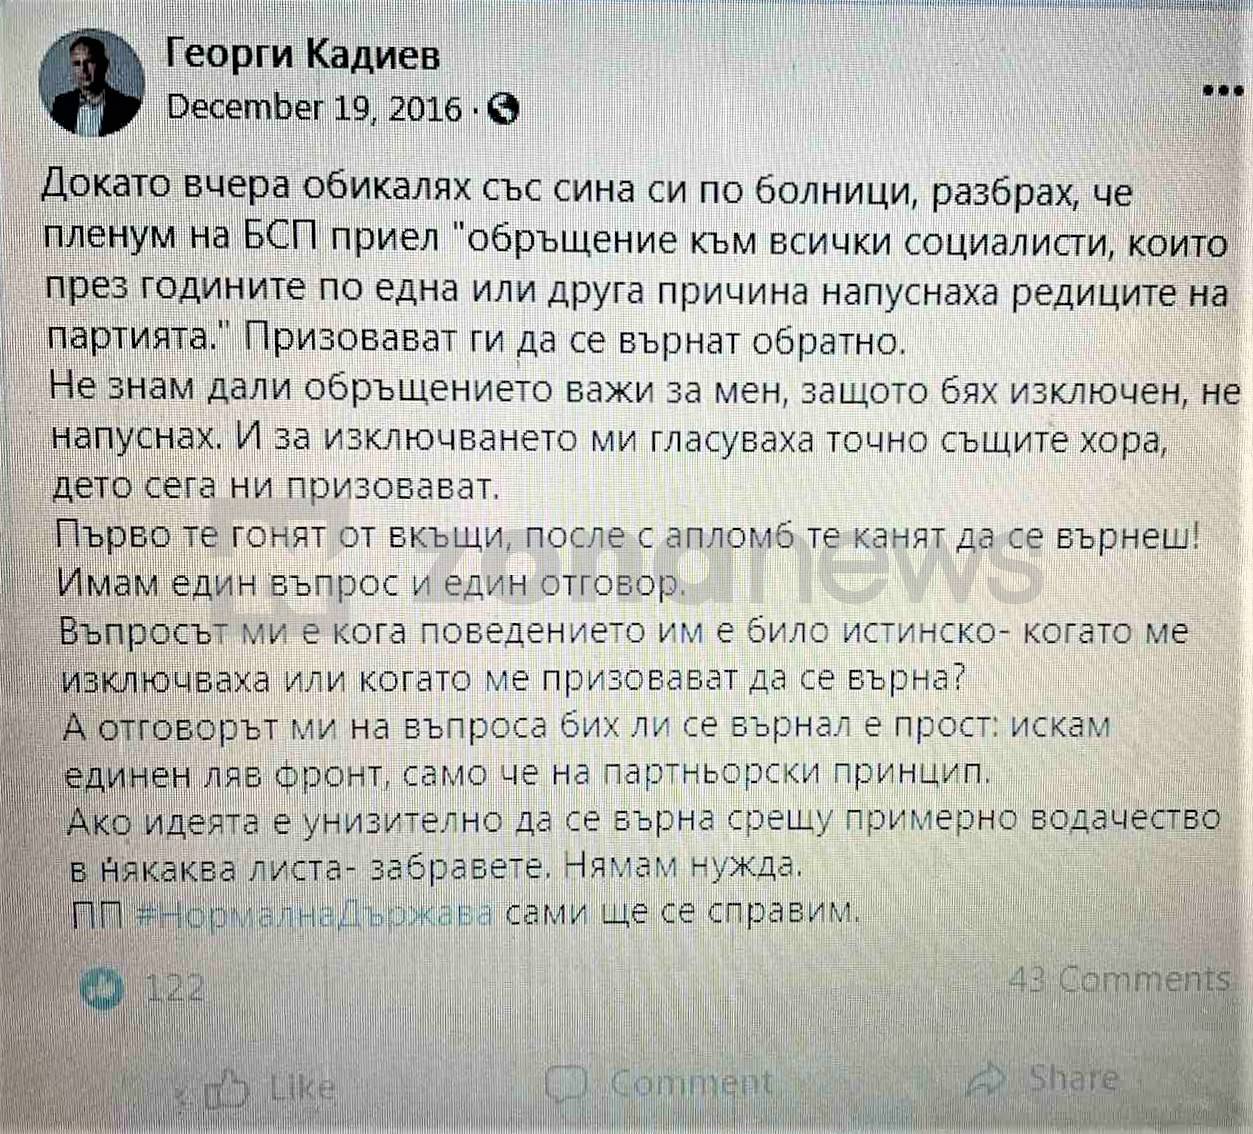 Постът на Георги Кадиев от 19 декември 2016 г.